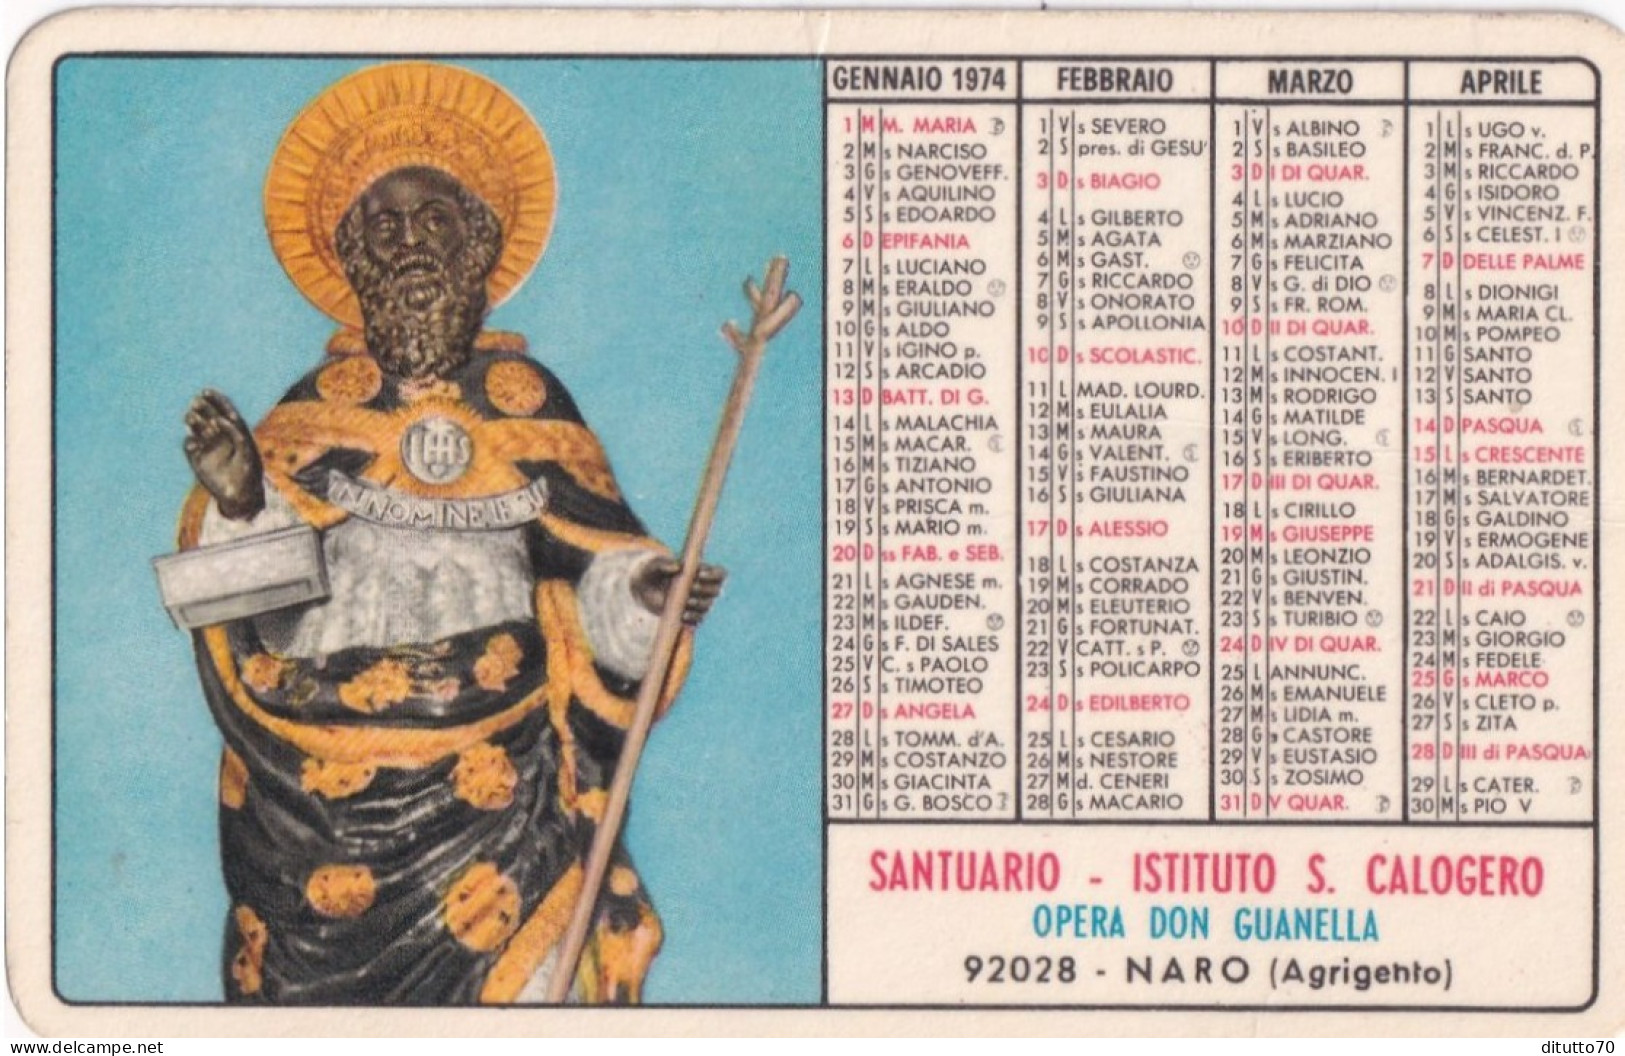 Calendarietto - Santuario - Istituto S.calogero - Opera Don Guanella - Naro - Agrigento - Anno 1974 - Small : 1971-80